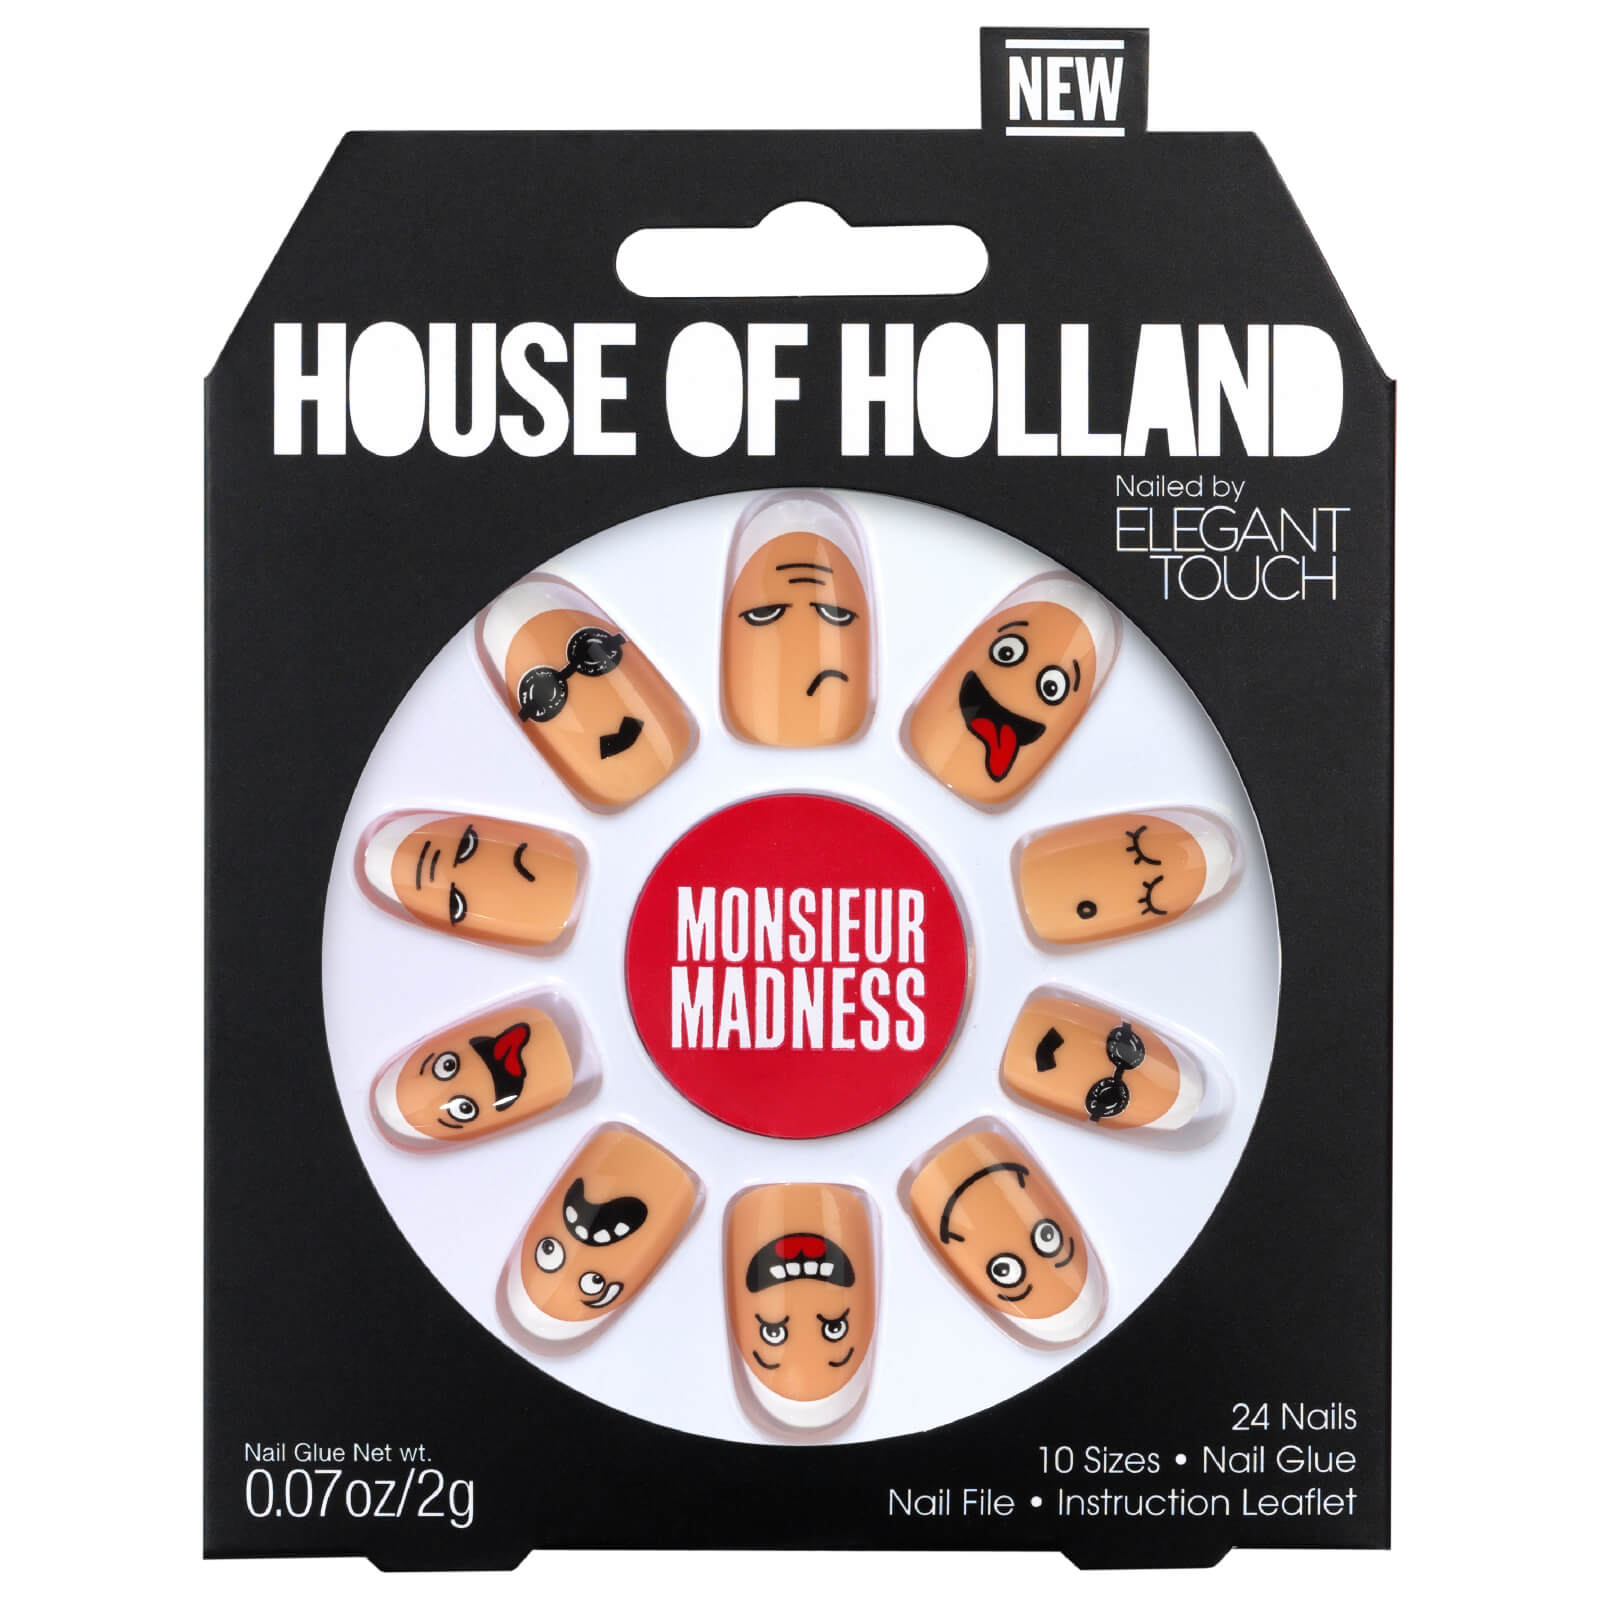 Uñas House of Holland V de Elegant Touch - Monsieur Madness